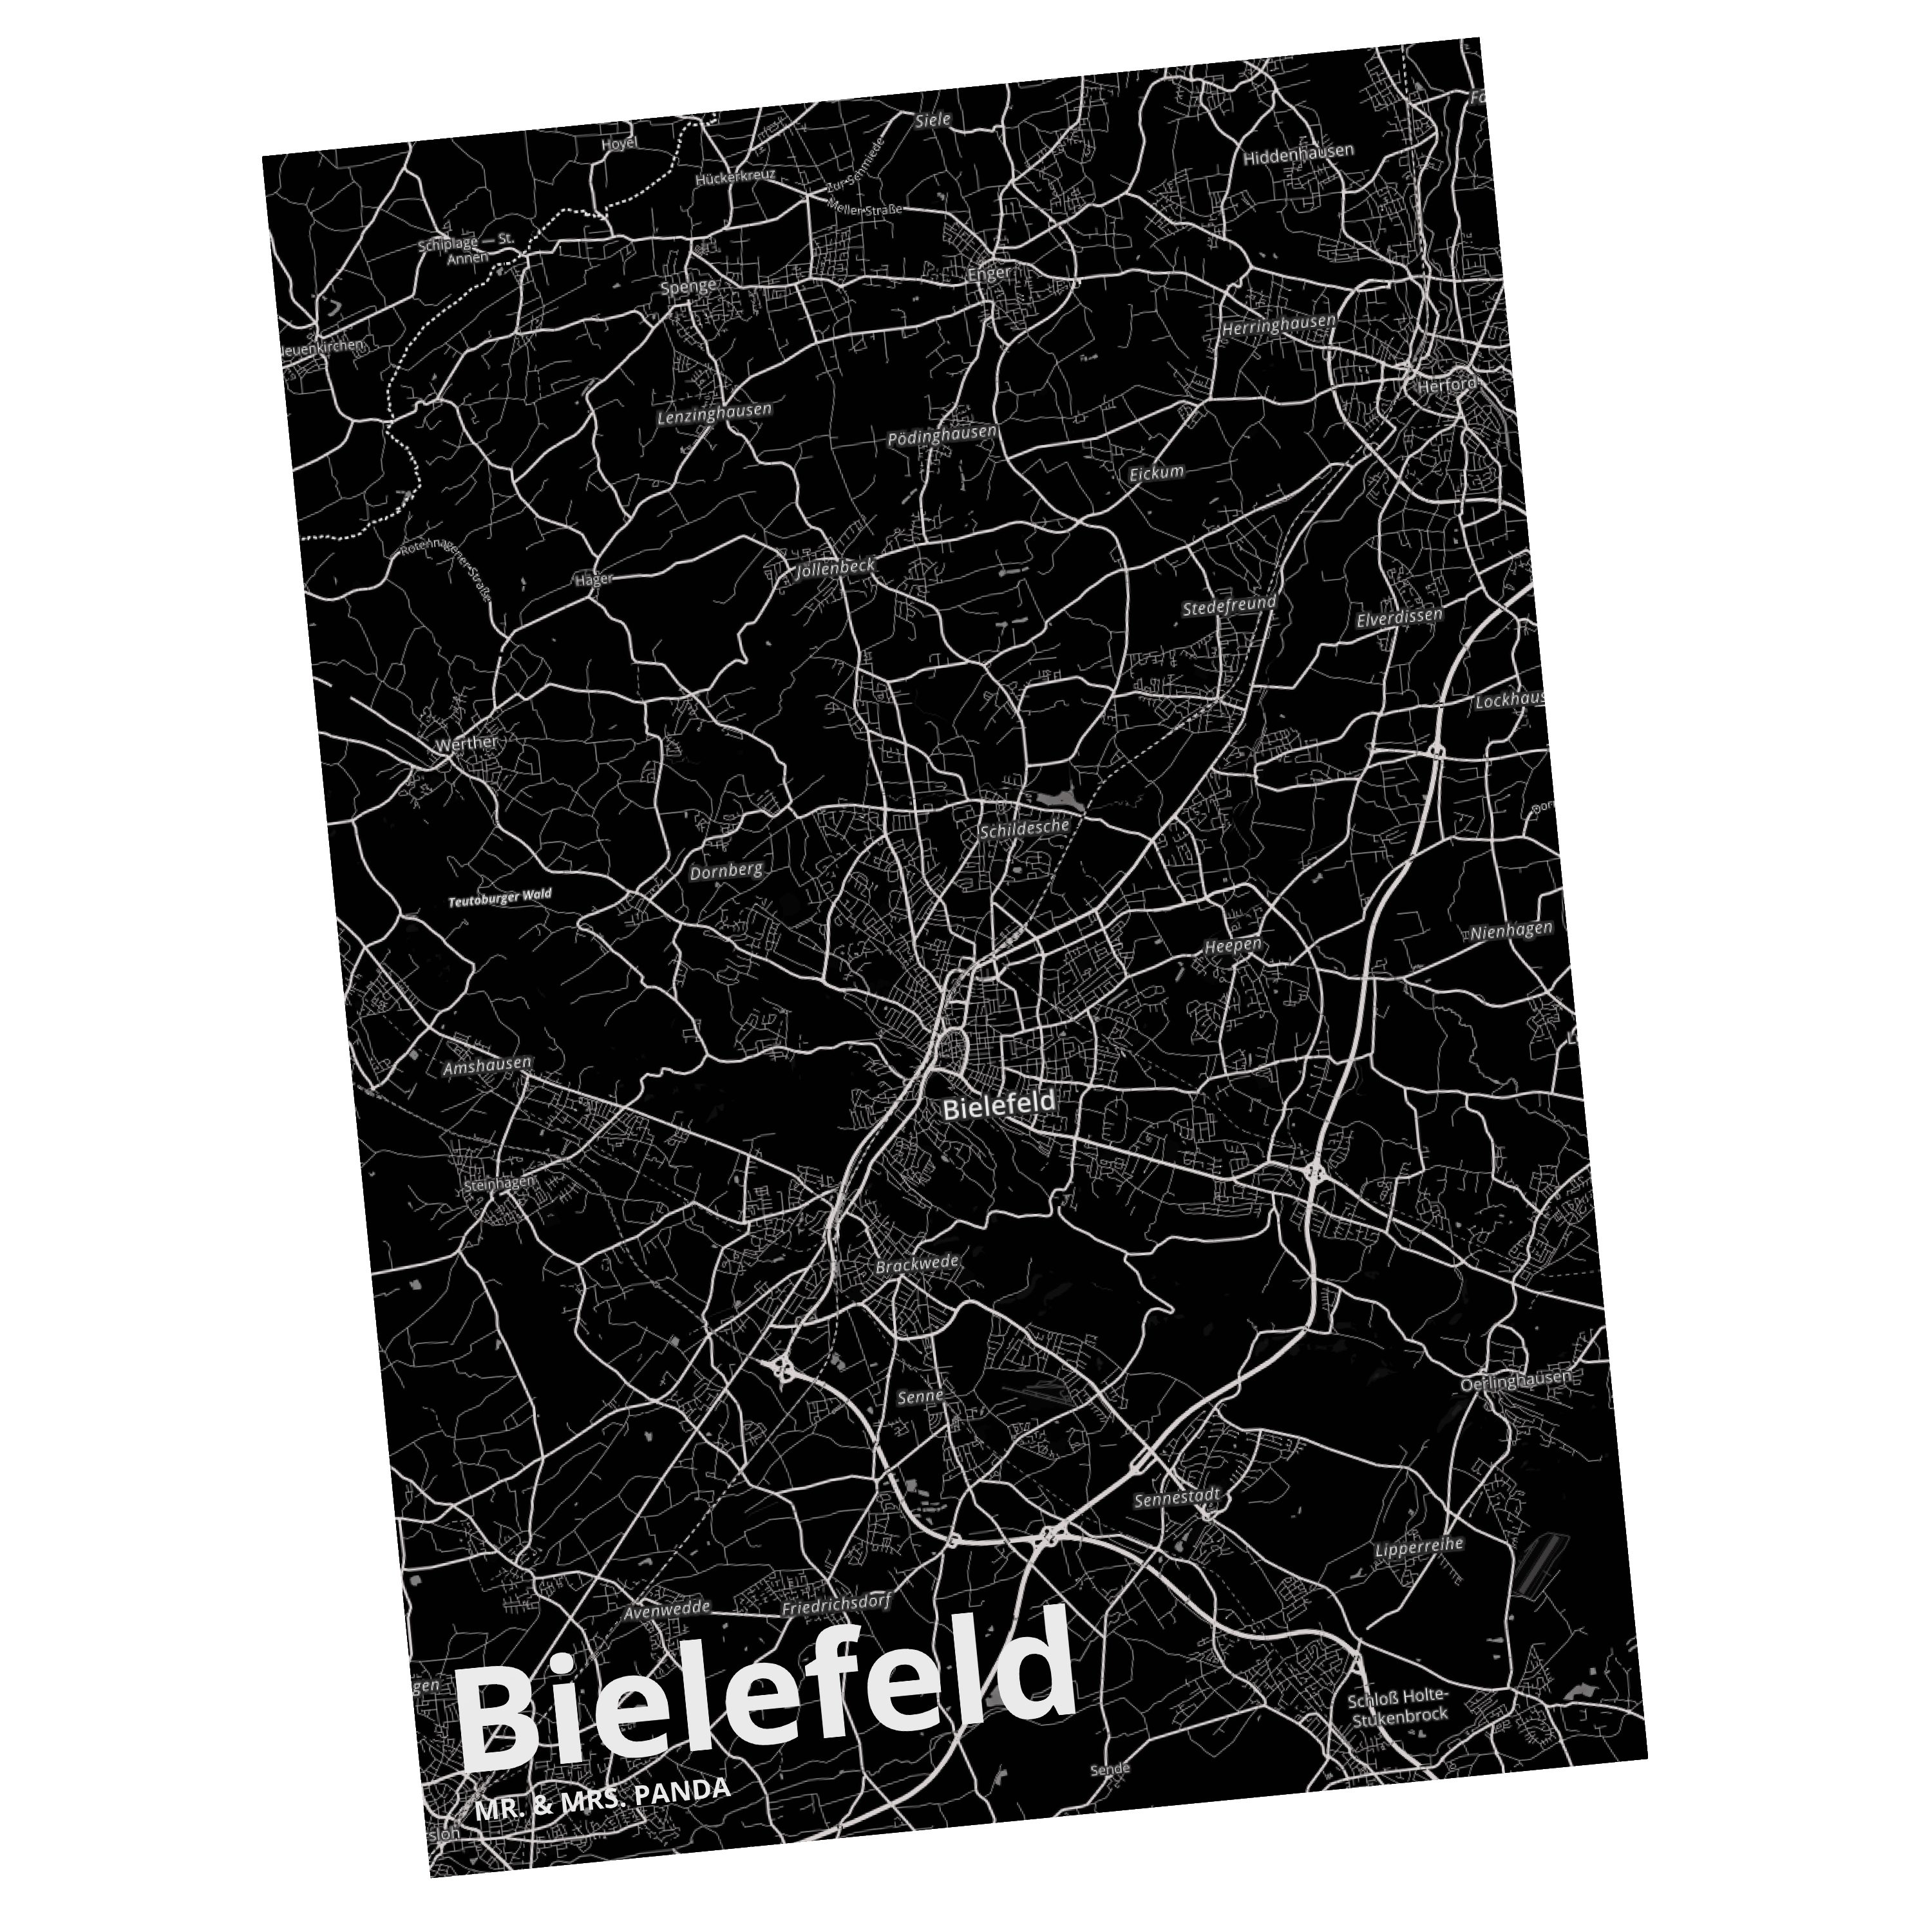 Mr. & Mrs. Panda Postkarte Bielefeld - Geschenk, Stadt Dorf Karte Landkarte Map Stadtplan, Gesch